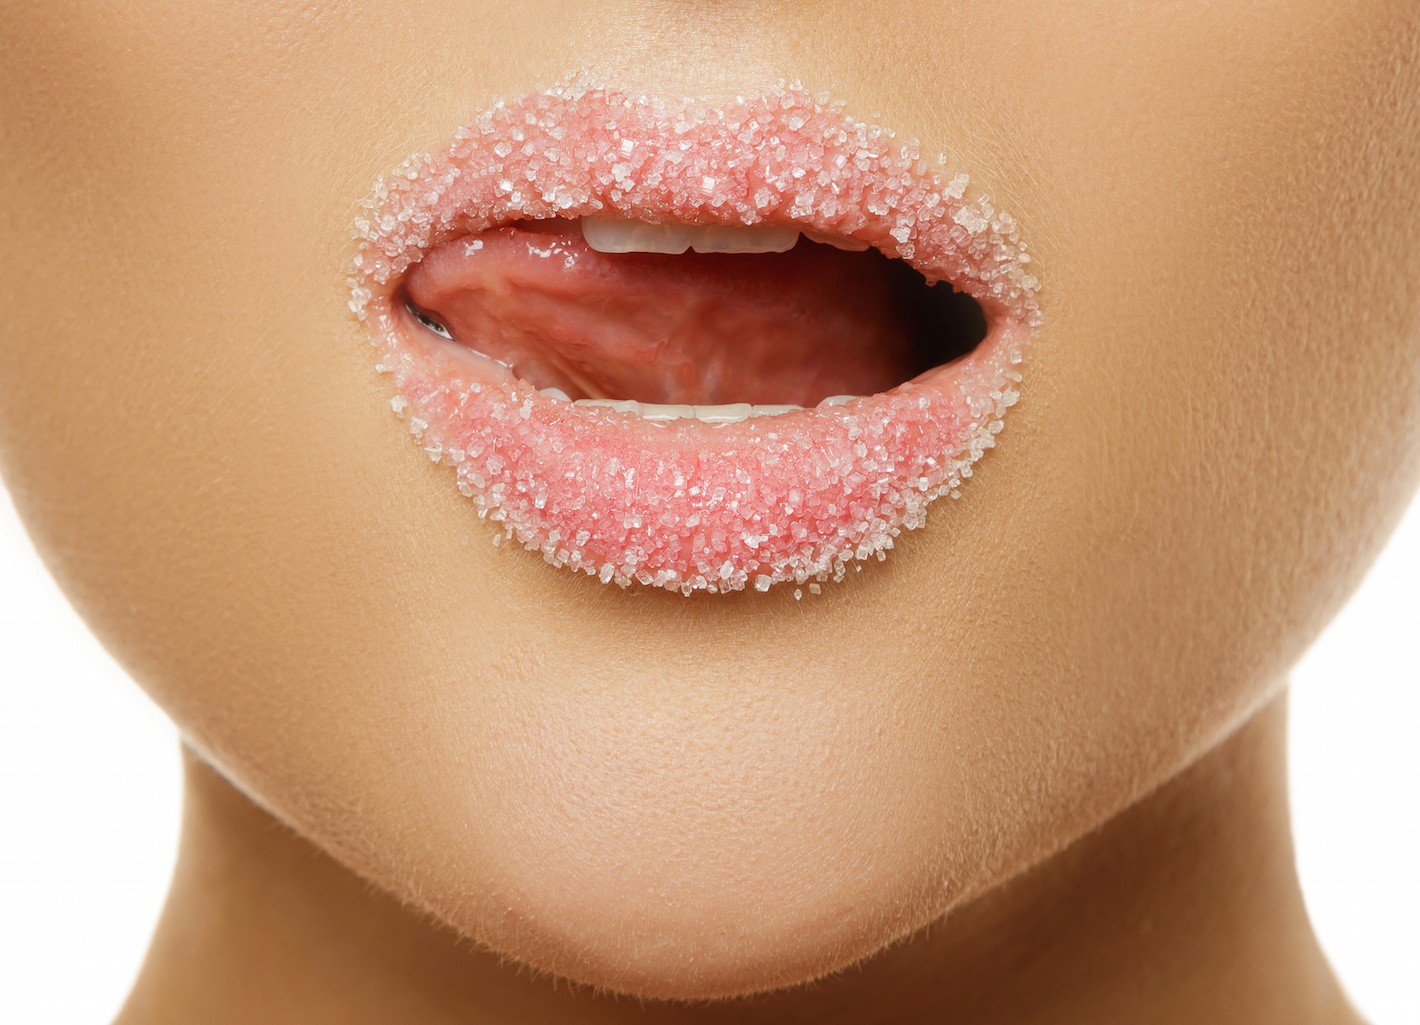 Jak przy pomocy samodzielnie przygotowanych peelingów zadbać o piękny wygląd ust?